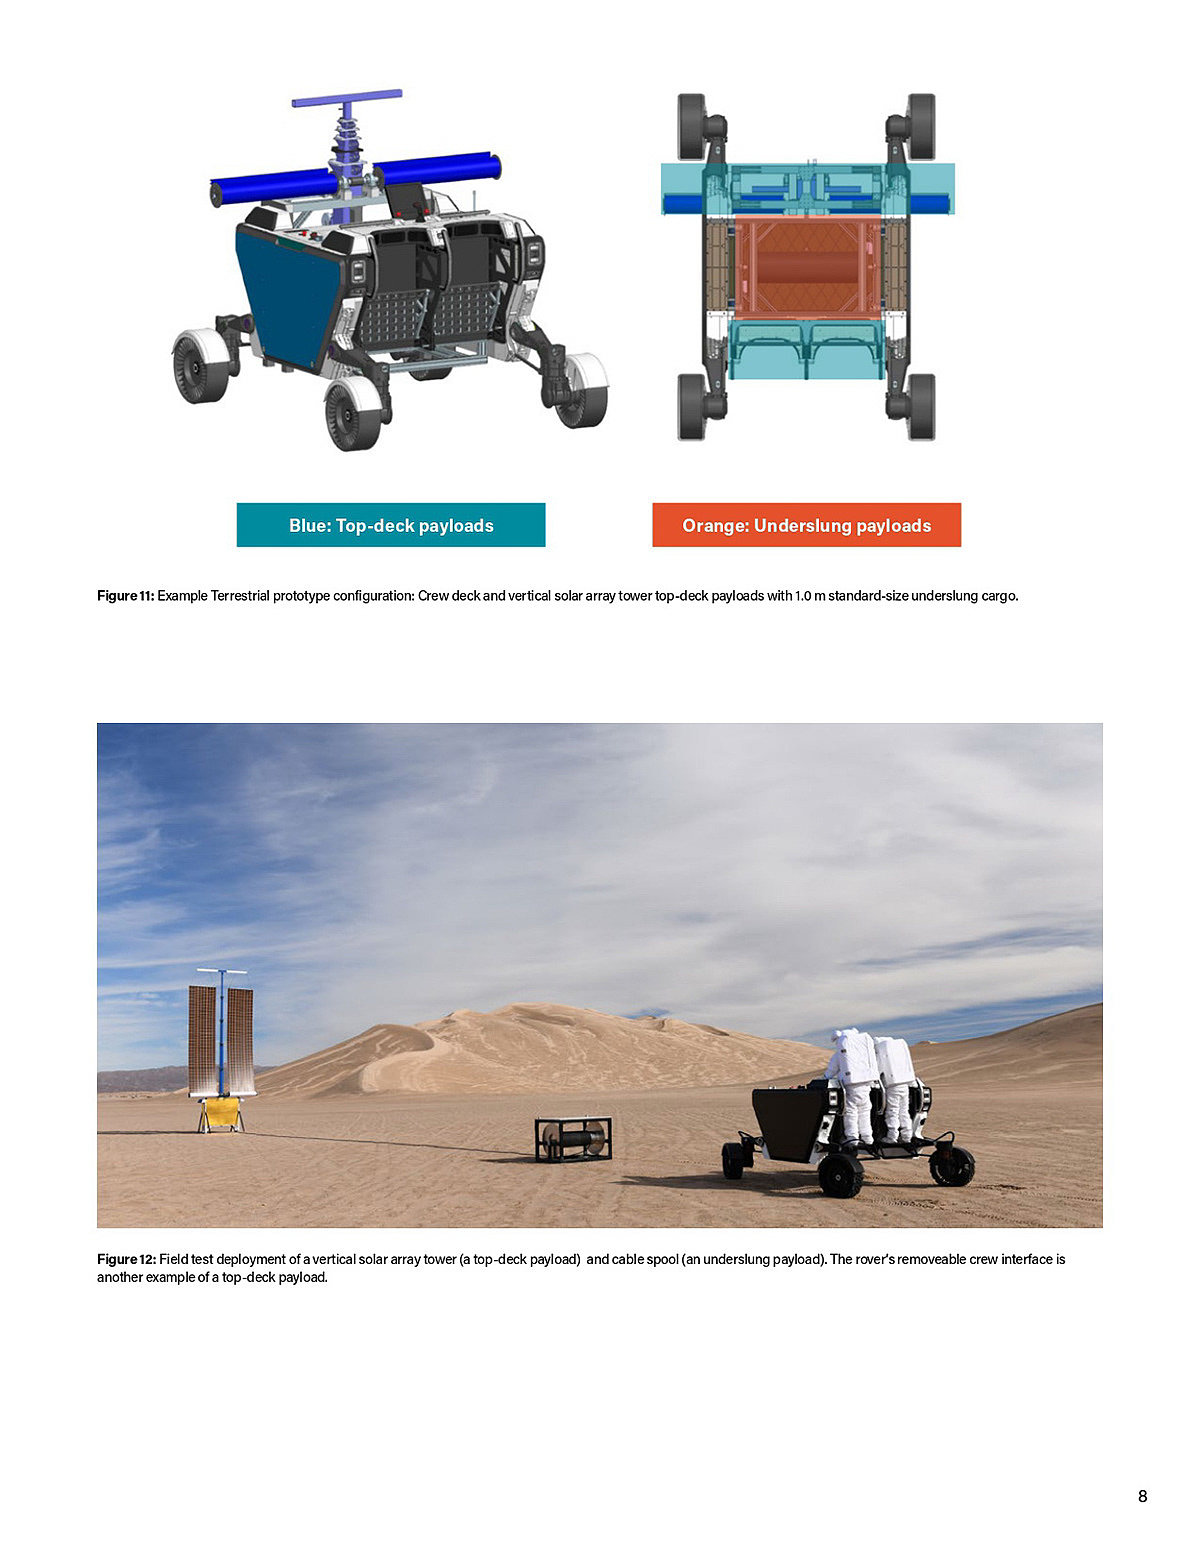 Flex，月球车，探测器，FLEX Rover，